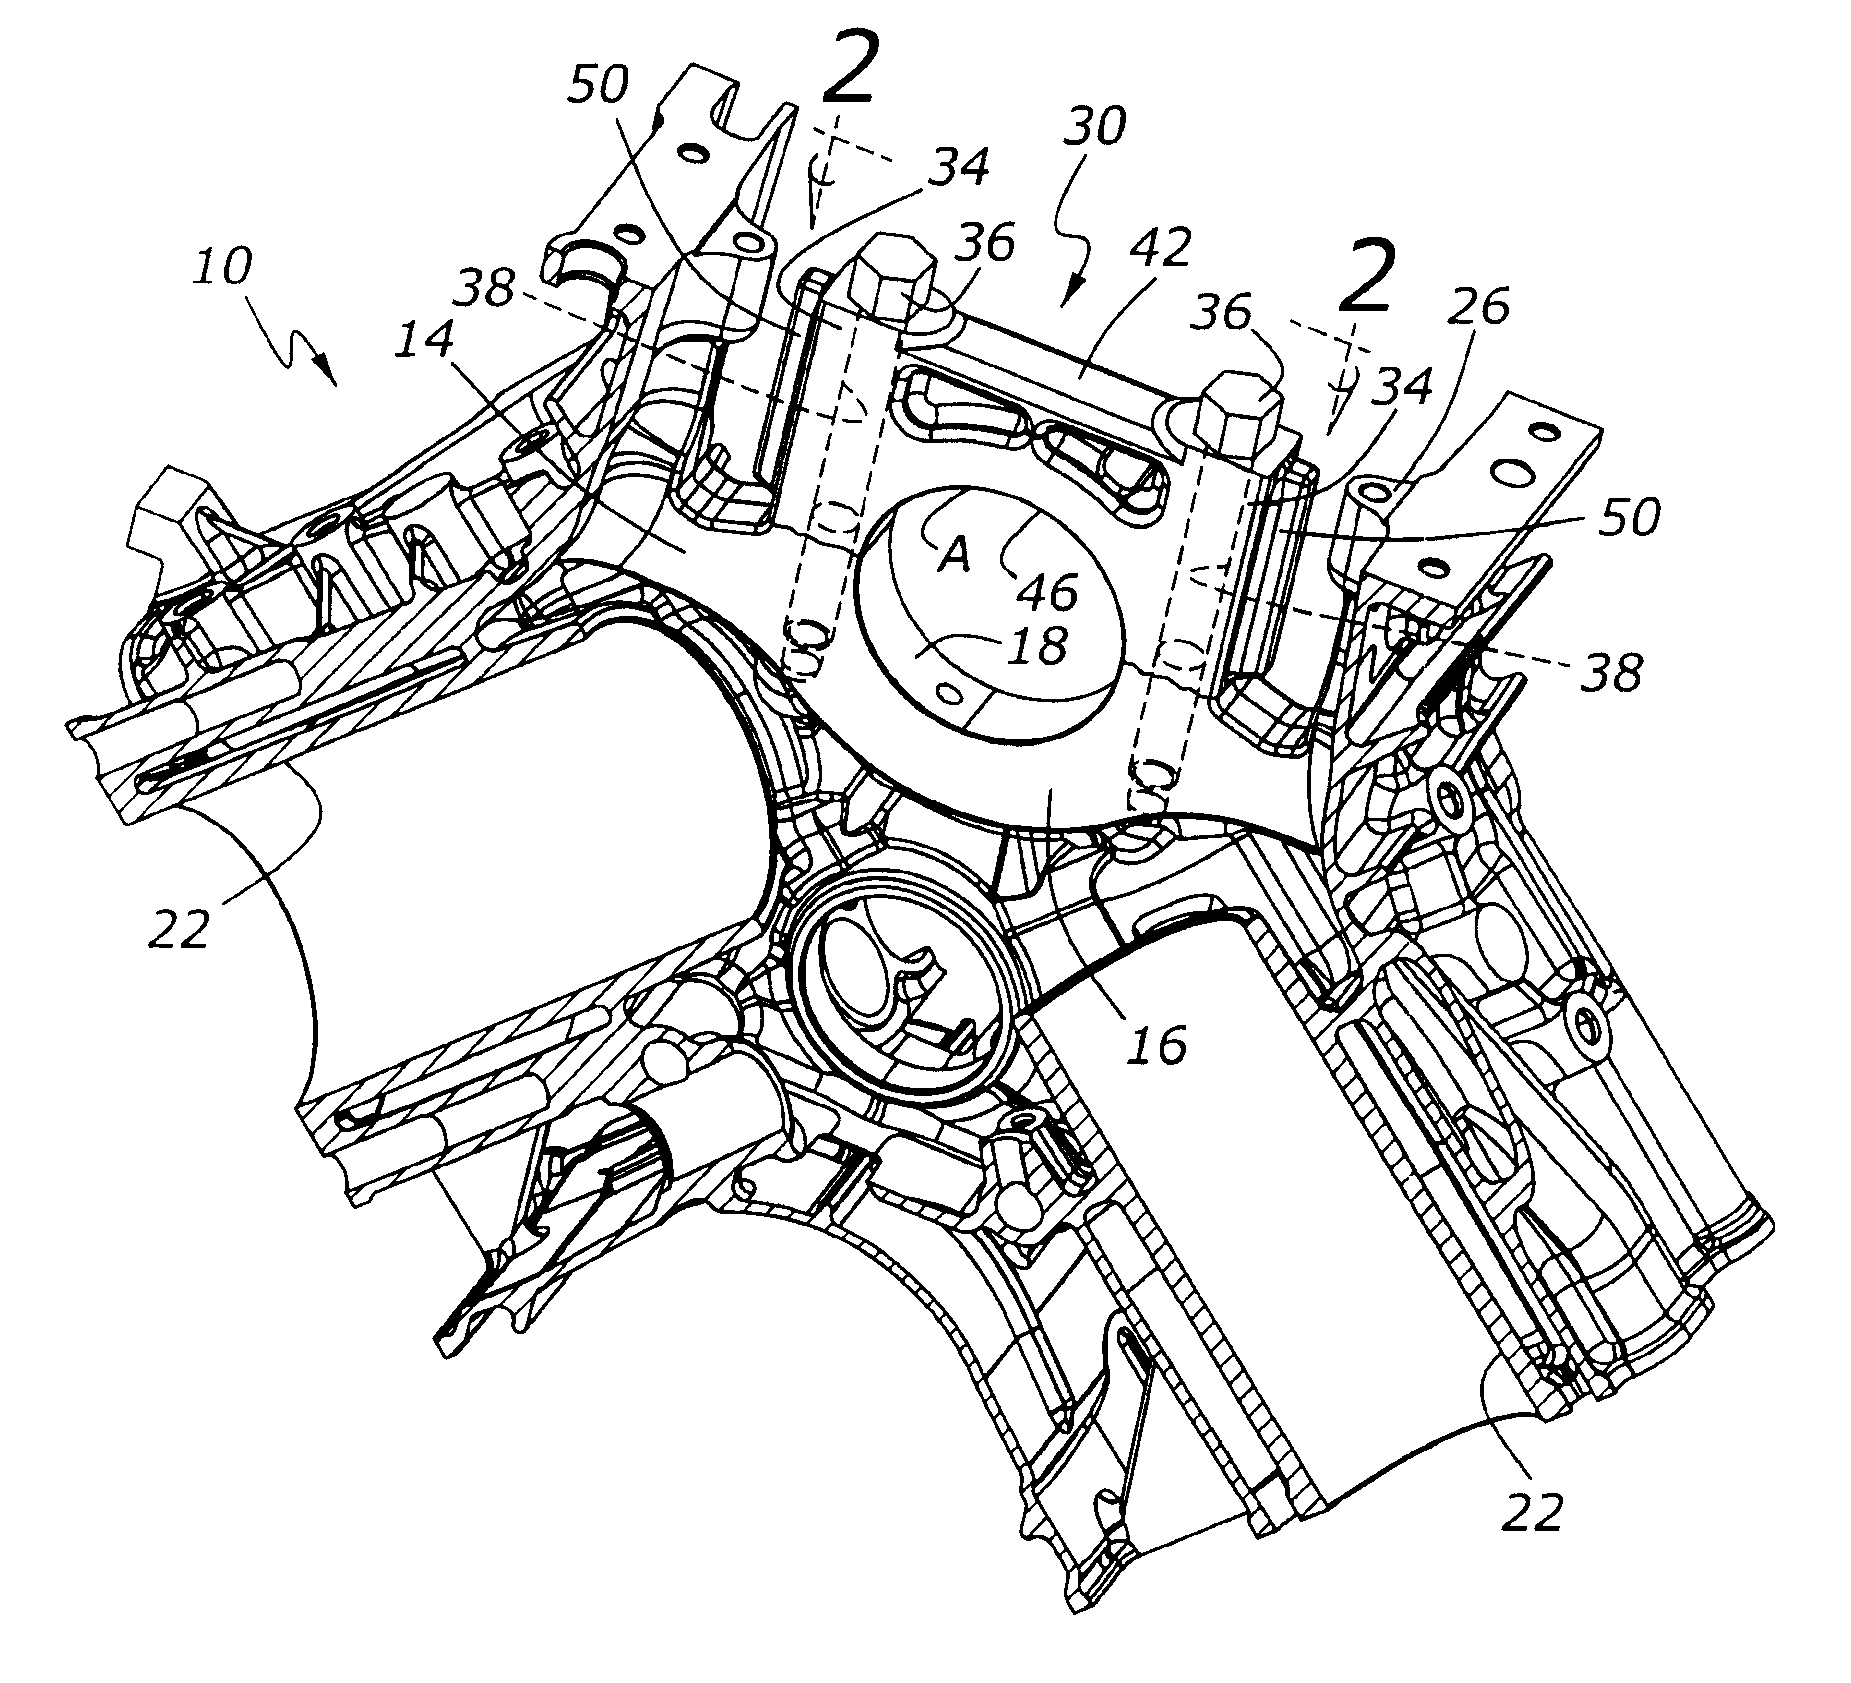 Automotive engine bearing